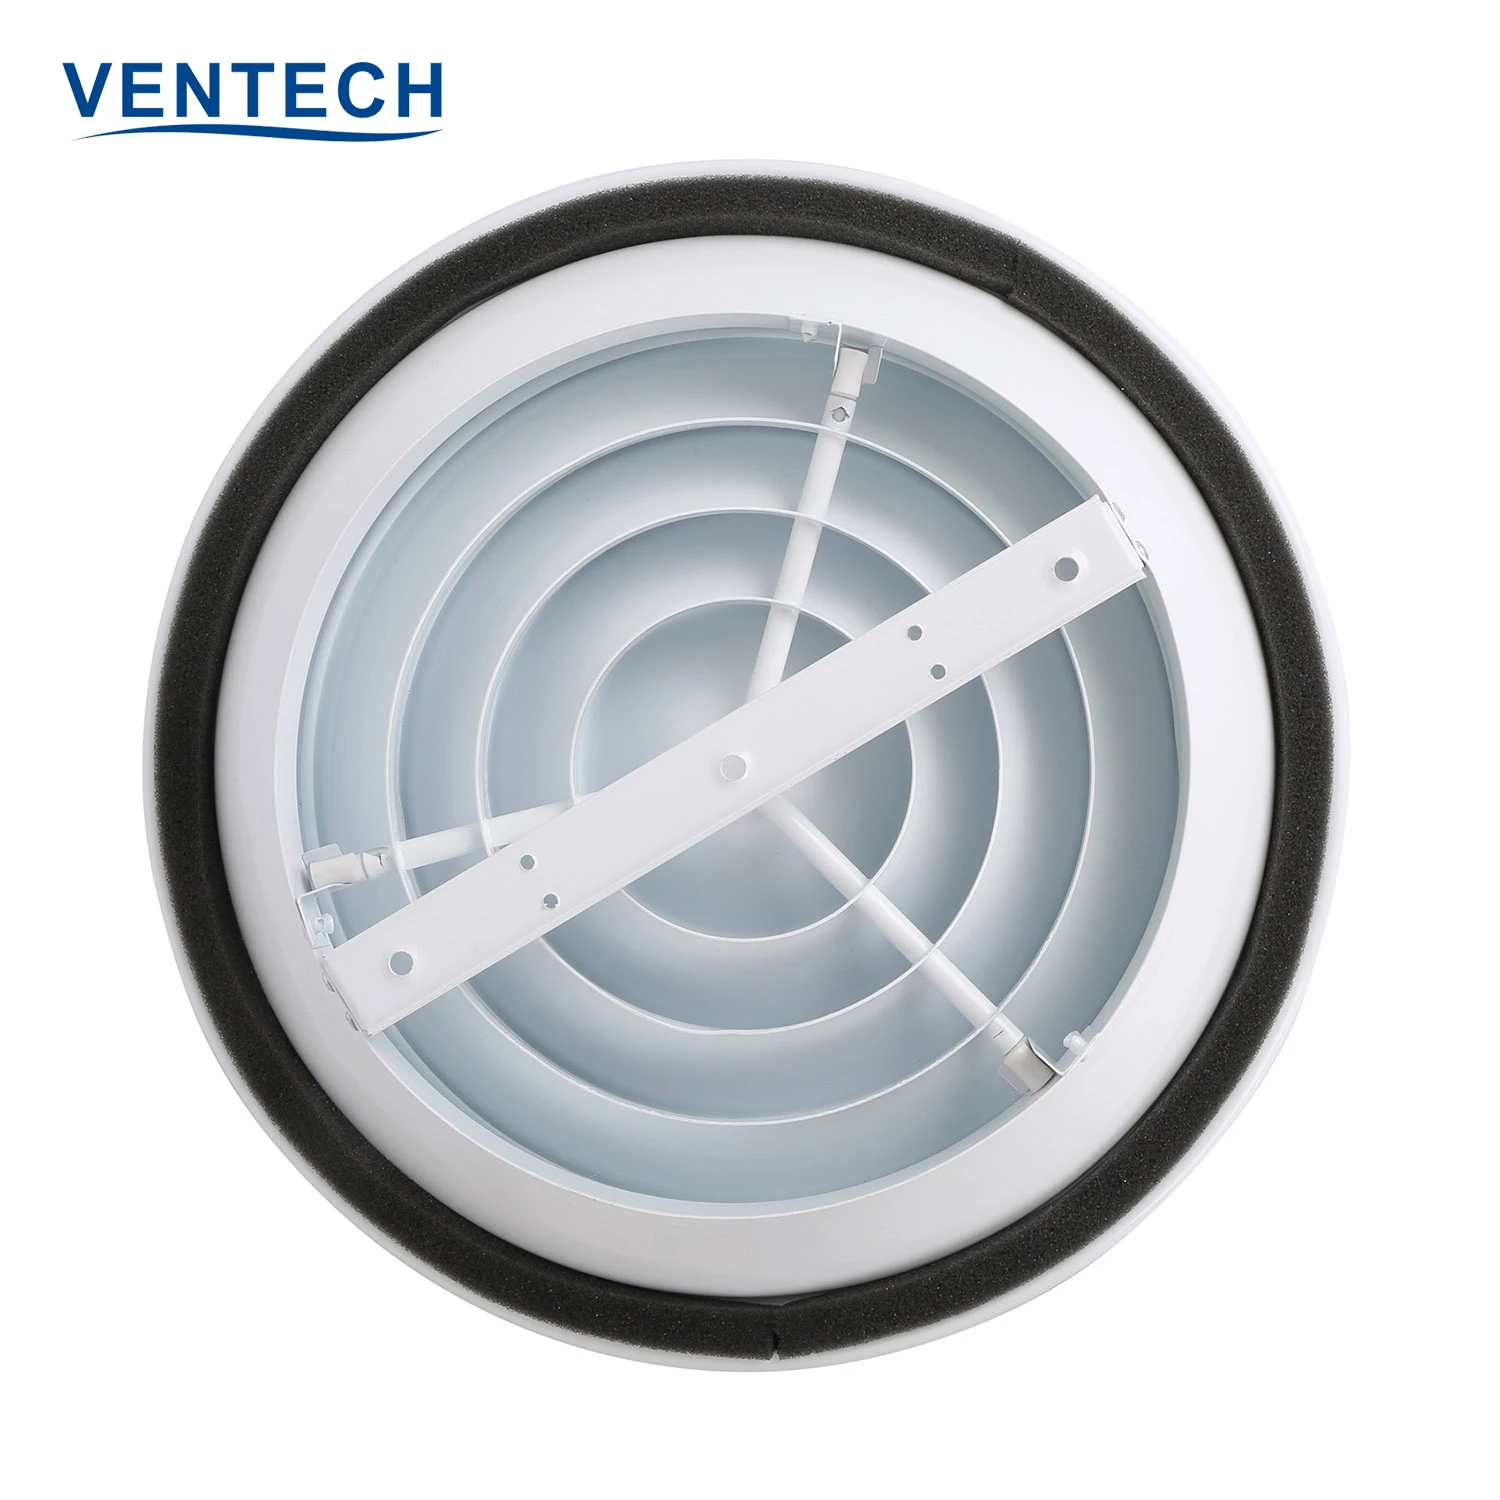 Hvac SystemAir Conditioner Aluminium Round Ceiling Circular Air Diffuser